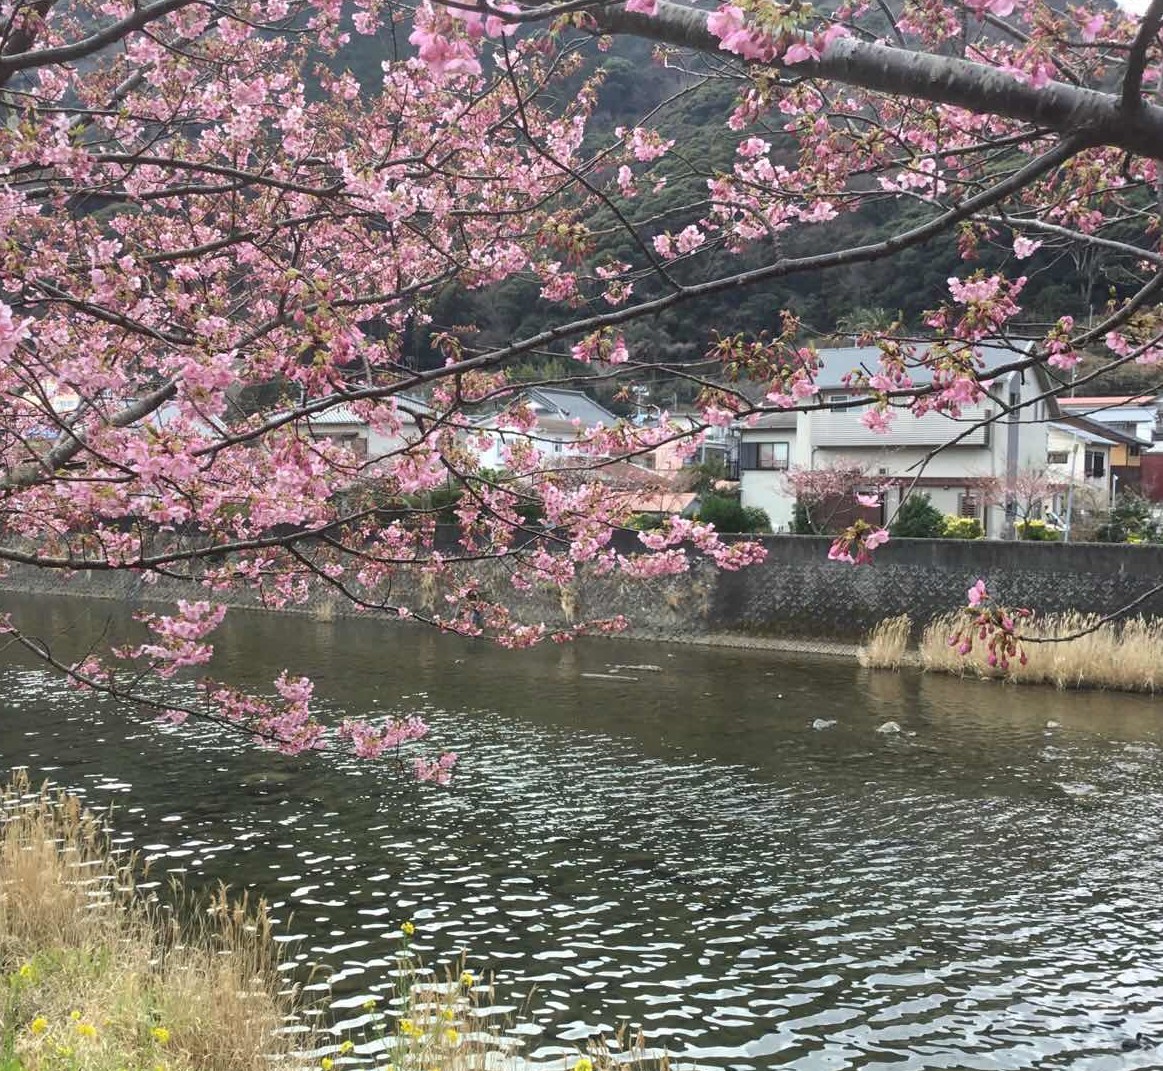 樱花红陌上日本热门赏樱地攻略- 手机马蜂窝